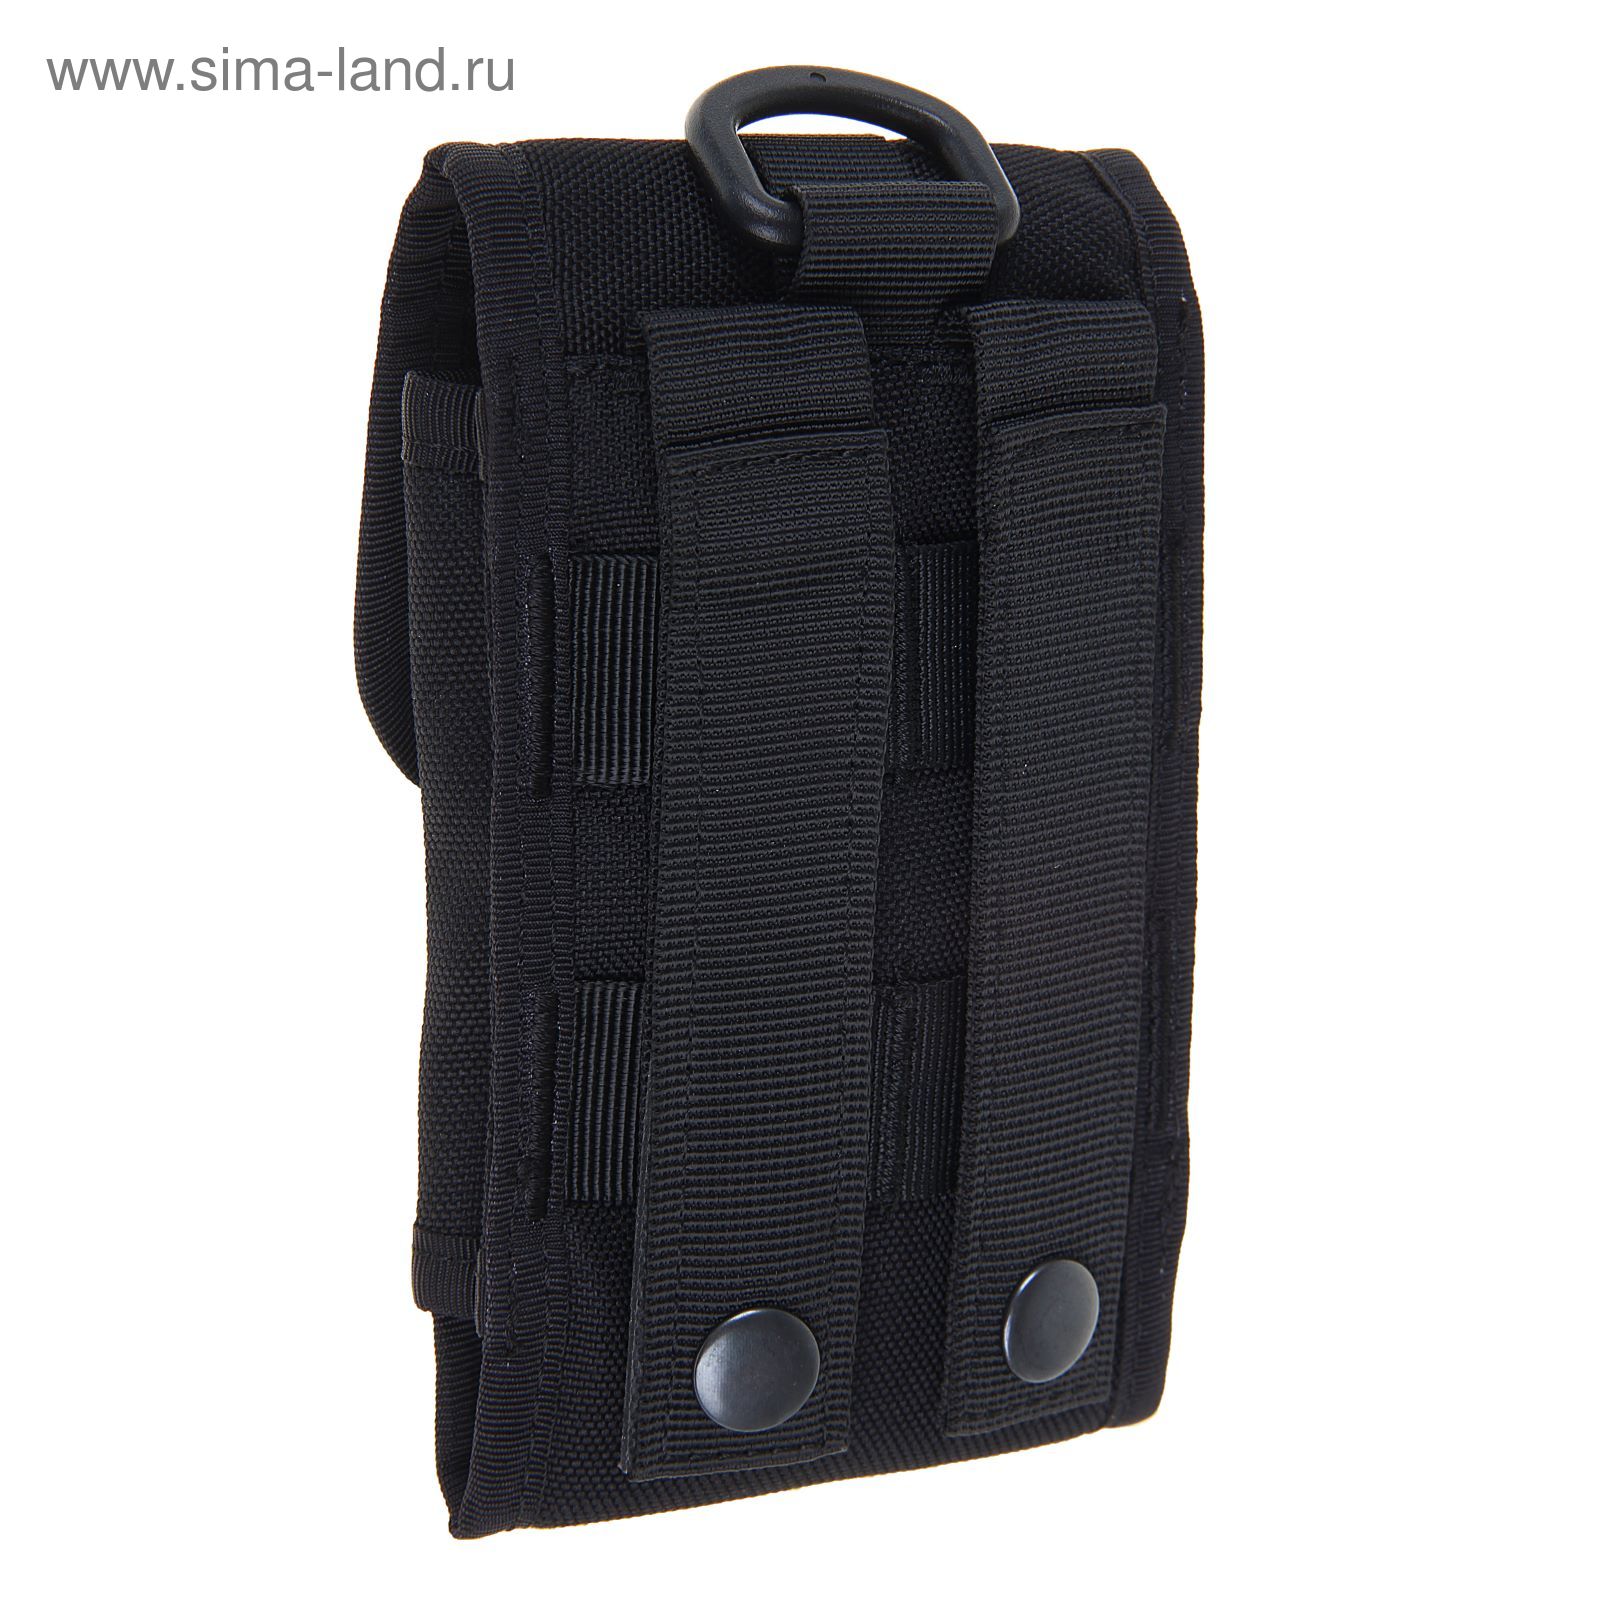 Подсумок Mobile bag Black BP-19-BK, 0,4 л